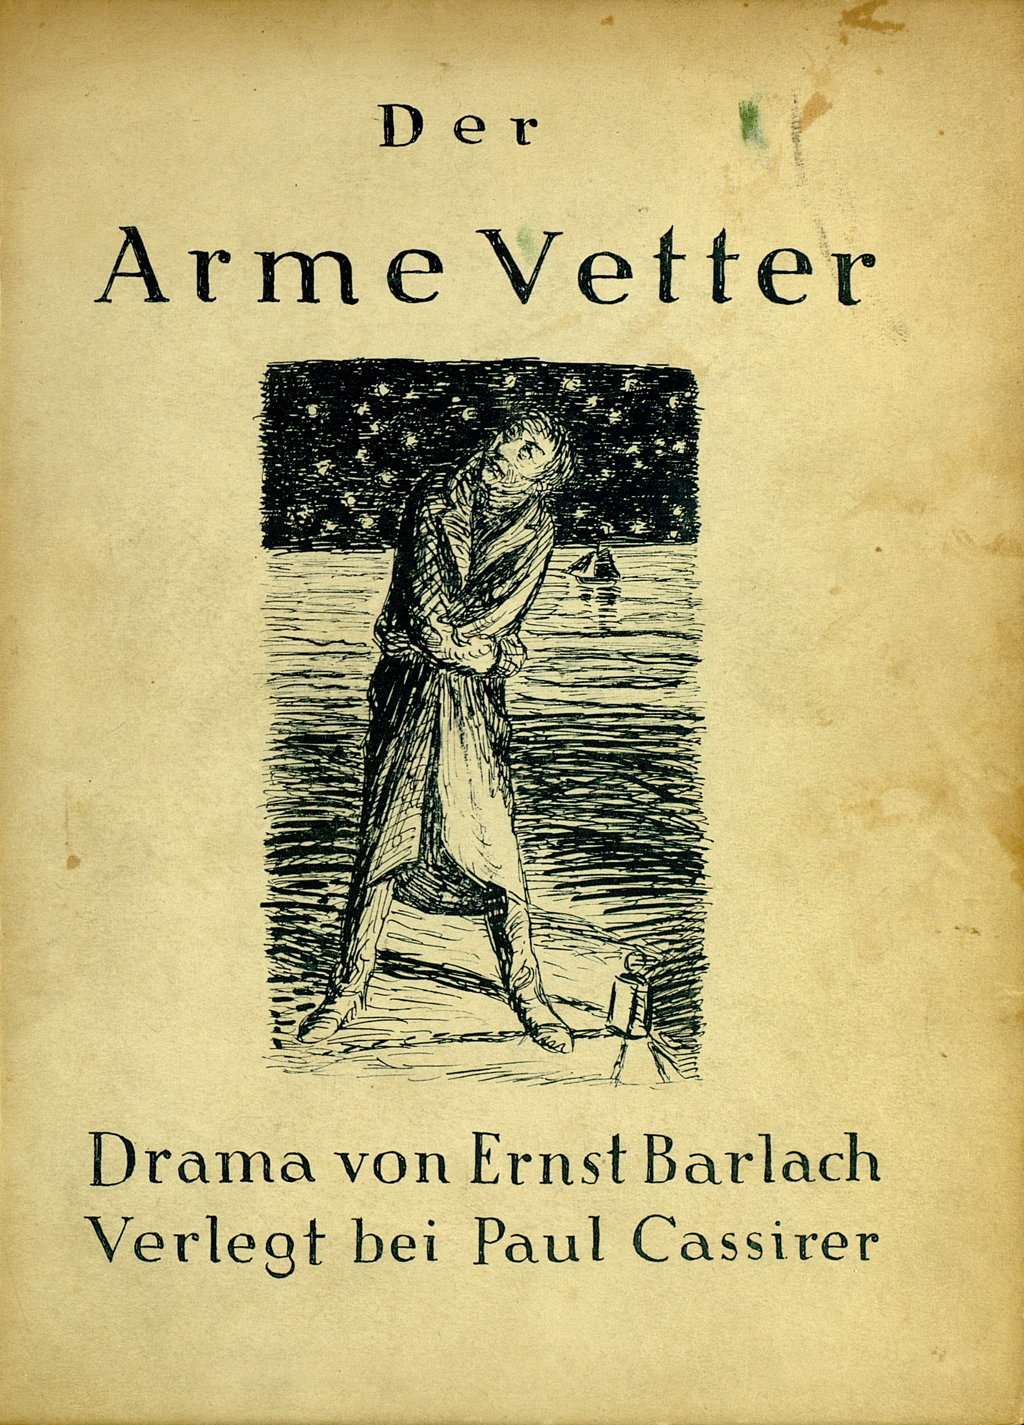 Zu sehen ist der vordere Buchdeckel von Ernst Barlachs Drama "Der arme Vetter" in der Erstausgabe von 1918. Der Einband zeigt das Motiv Sternreigen nach einer Radierung. 